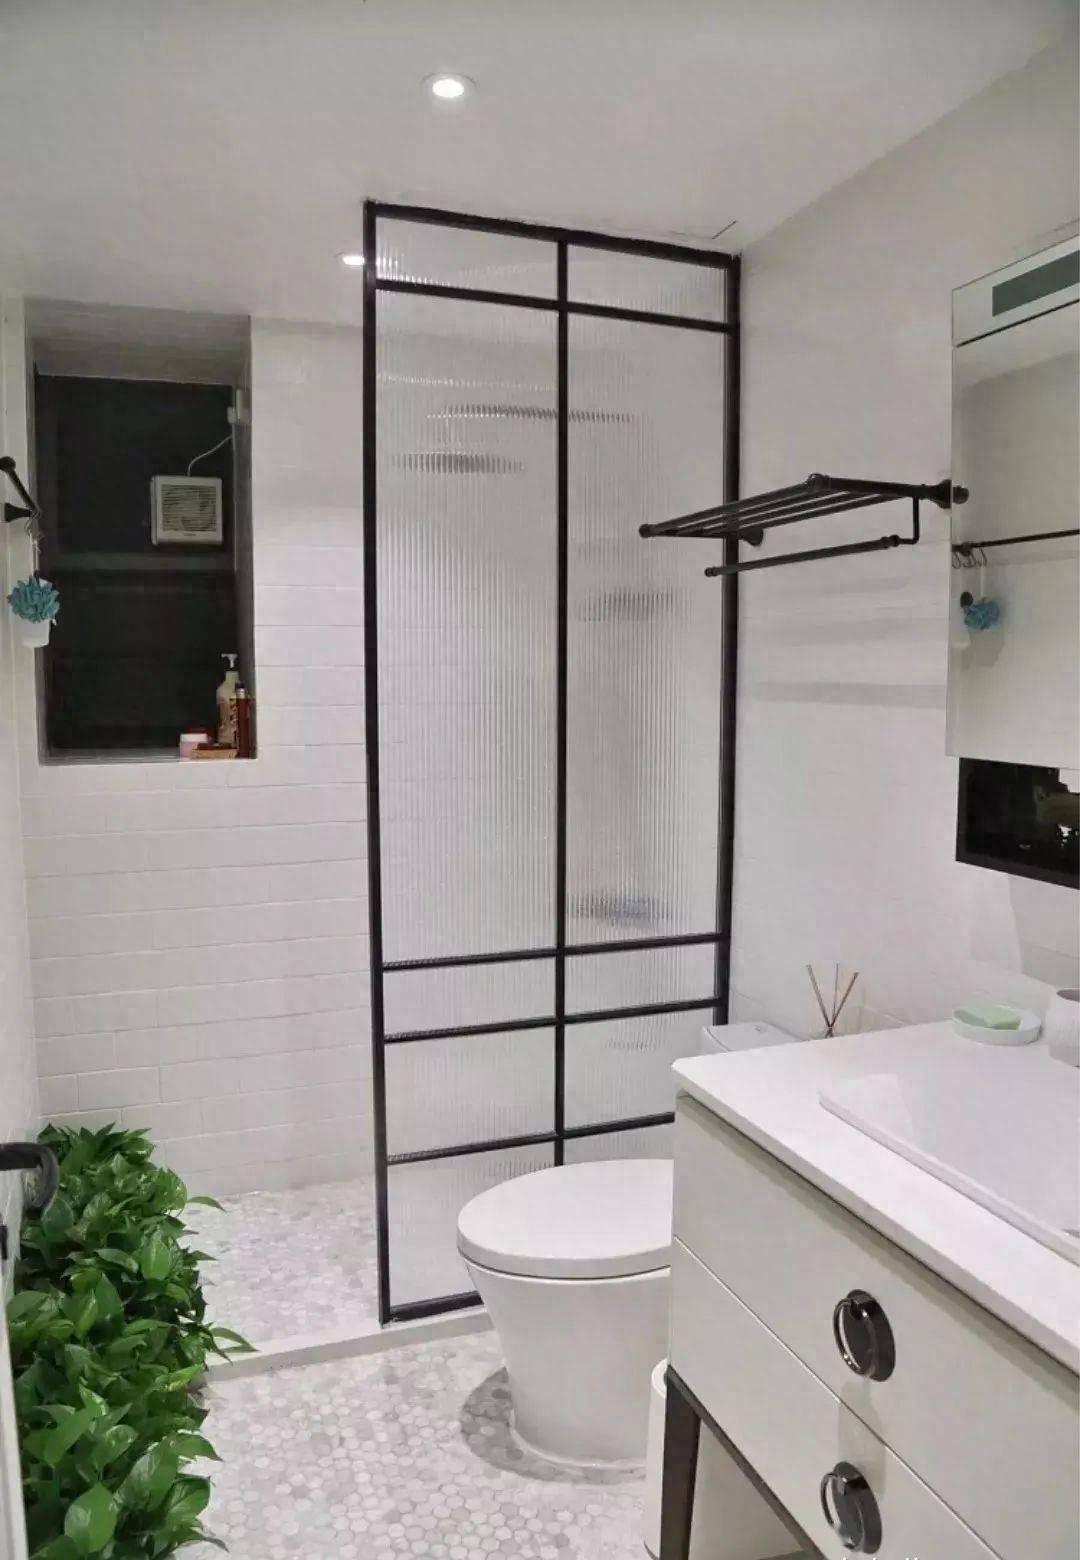 Phòng tắm quá nhỏ, làm sao để bạn có thể tách biệt khu khô và ướt? 4 thiết kế dưới đây sẽ giúp bạn - Ảnh 1.